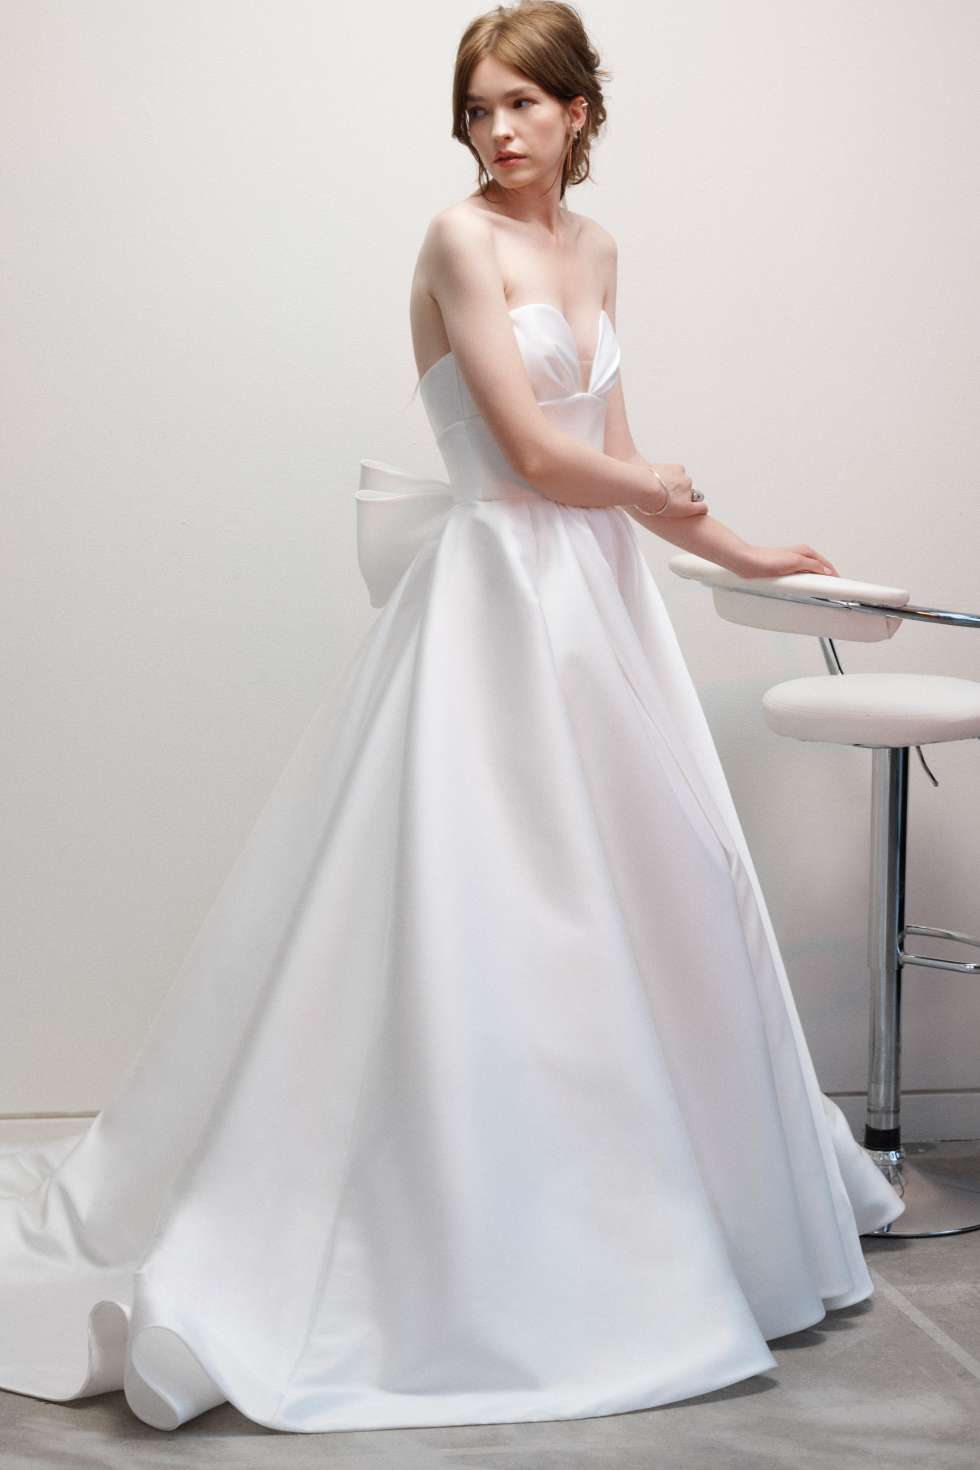 فساتين زفاف ريفيني لخريف وشتاء 2021 من تصميم ريتا فينيريس